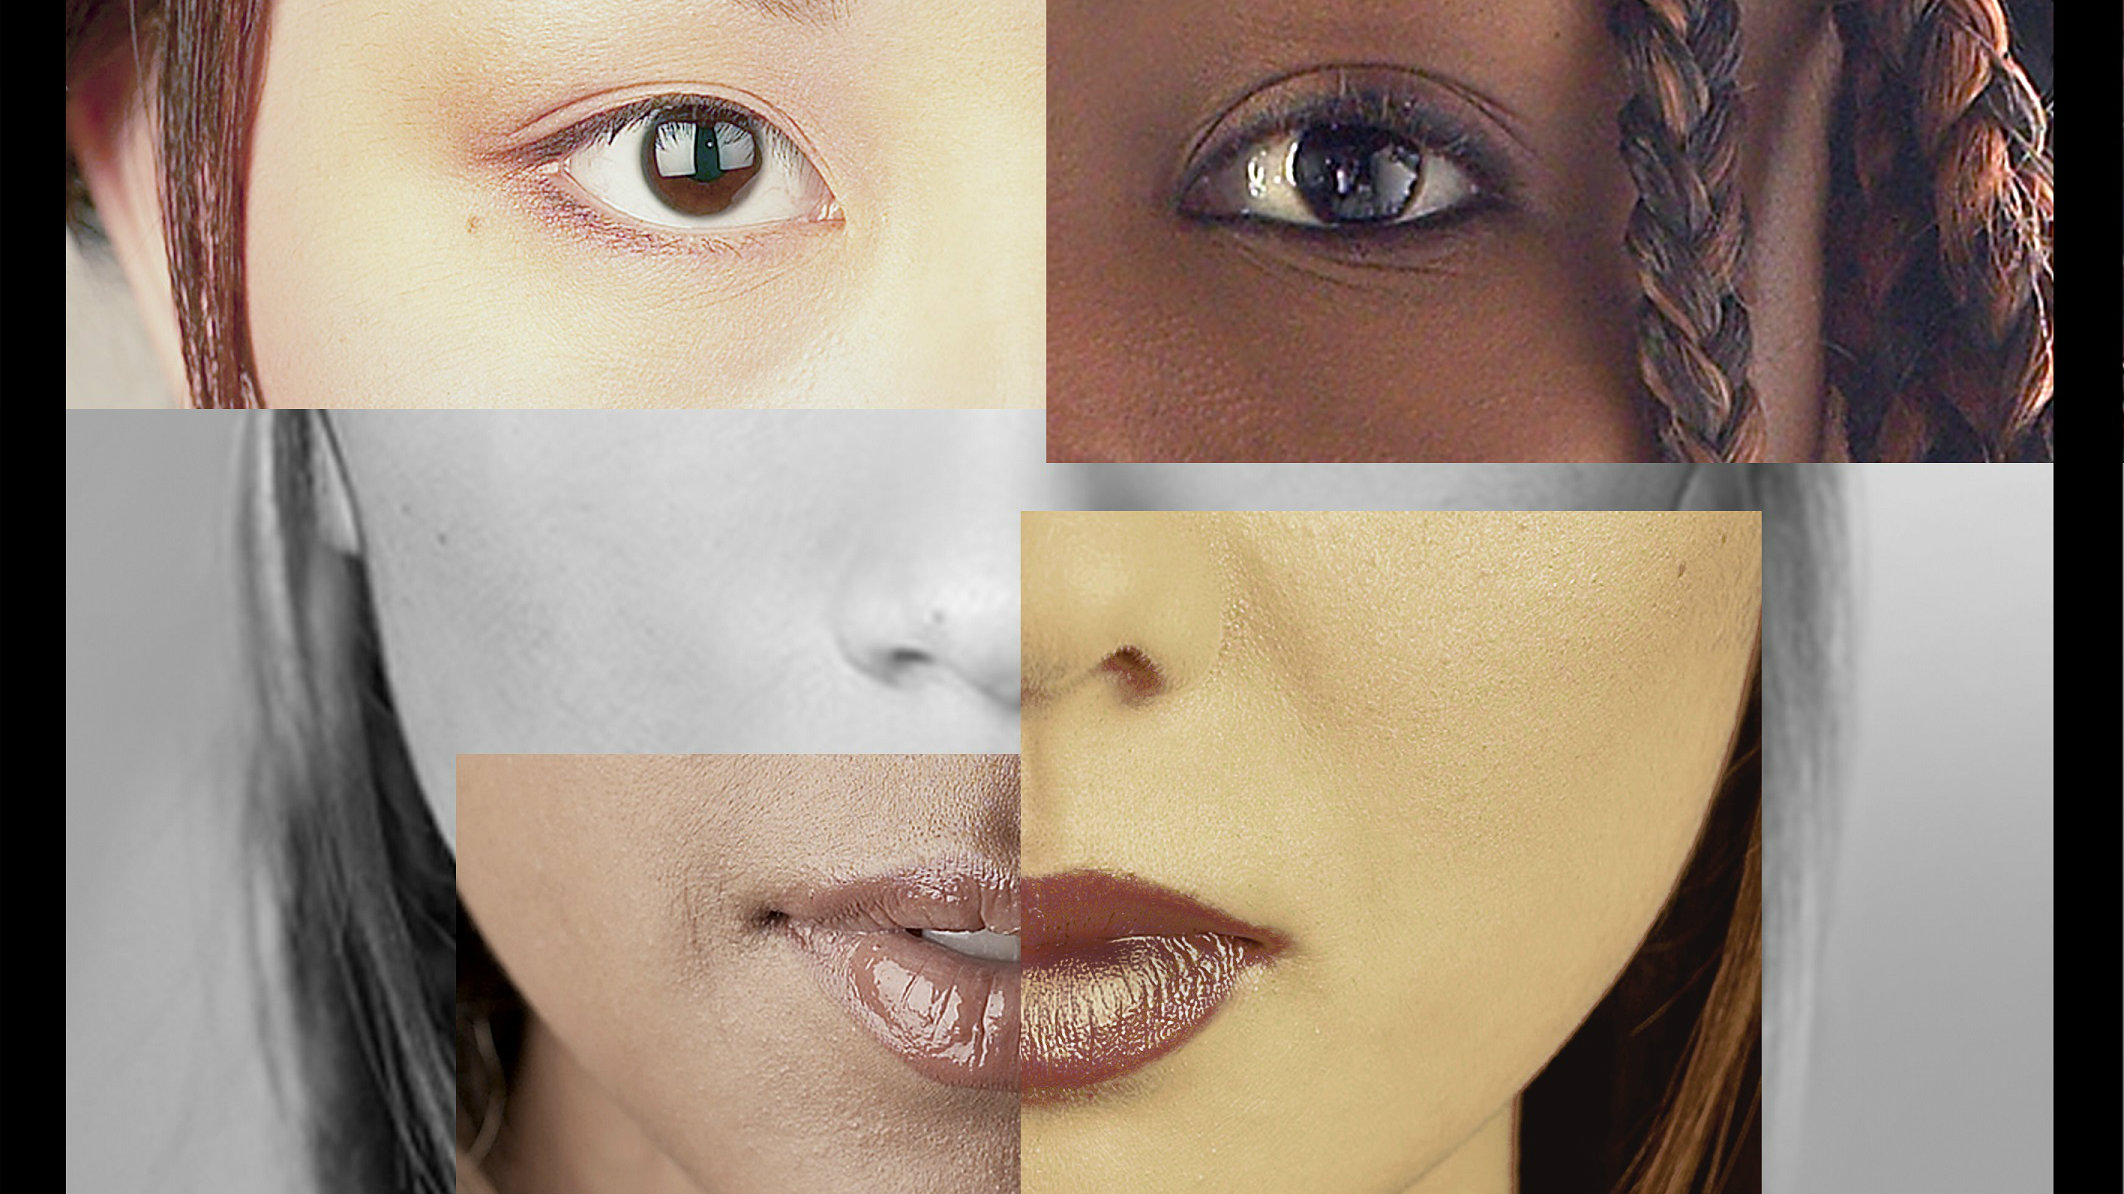 Photo: Multiracial face History Colorado Center exhibit on Race